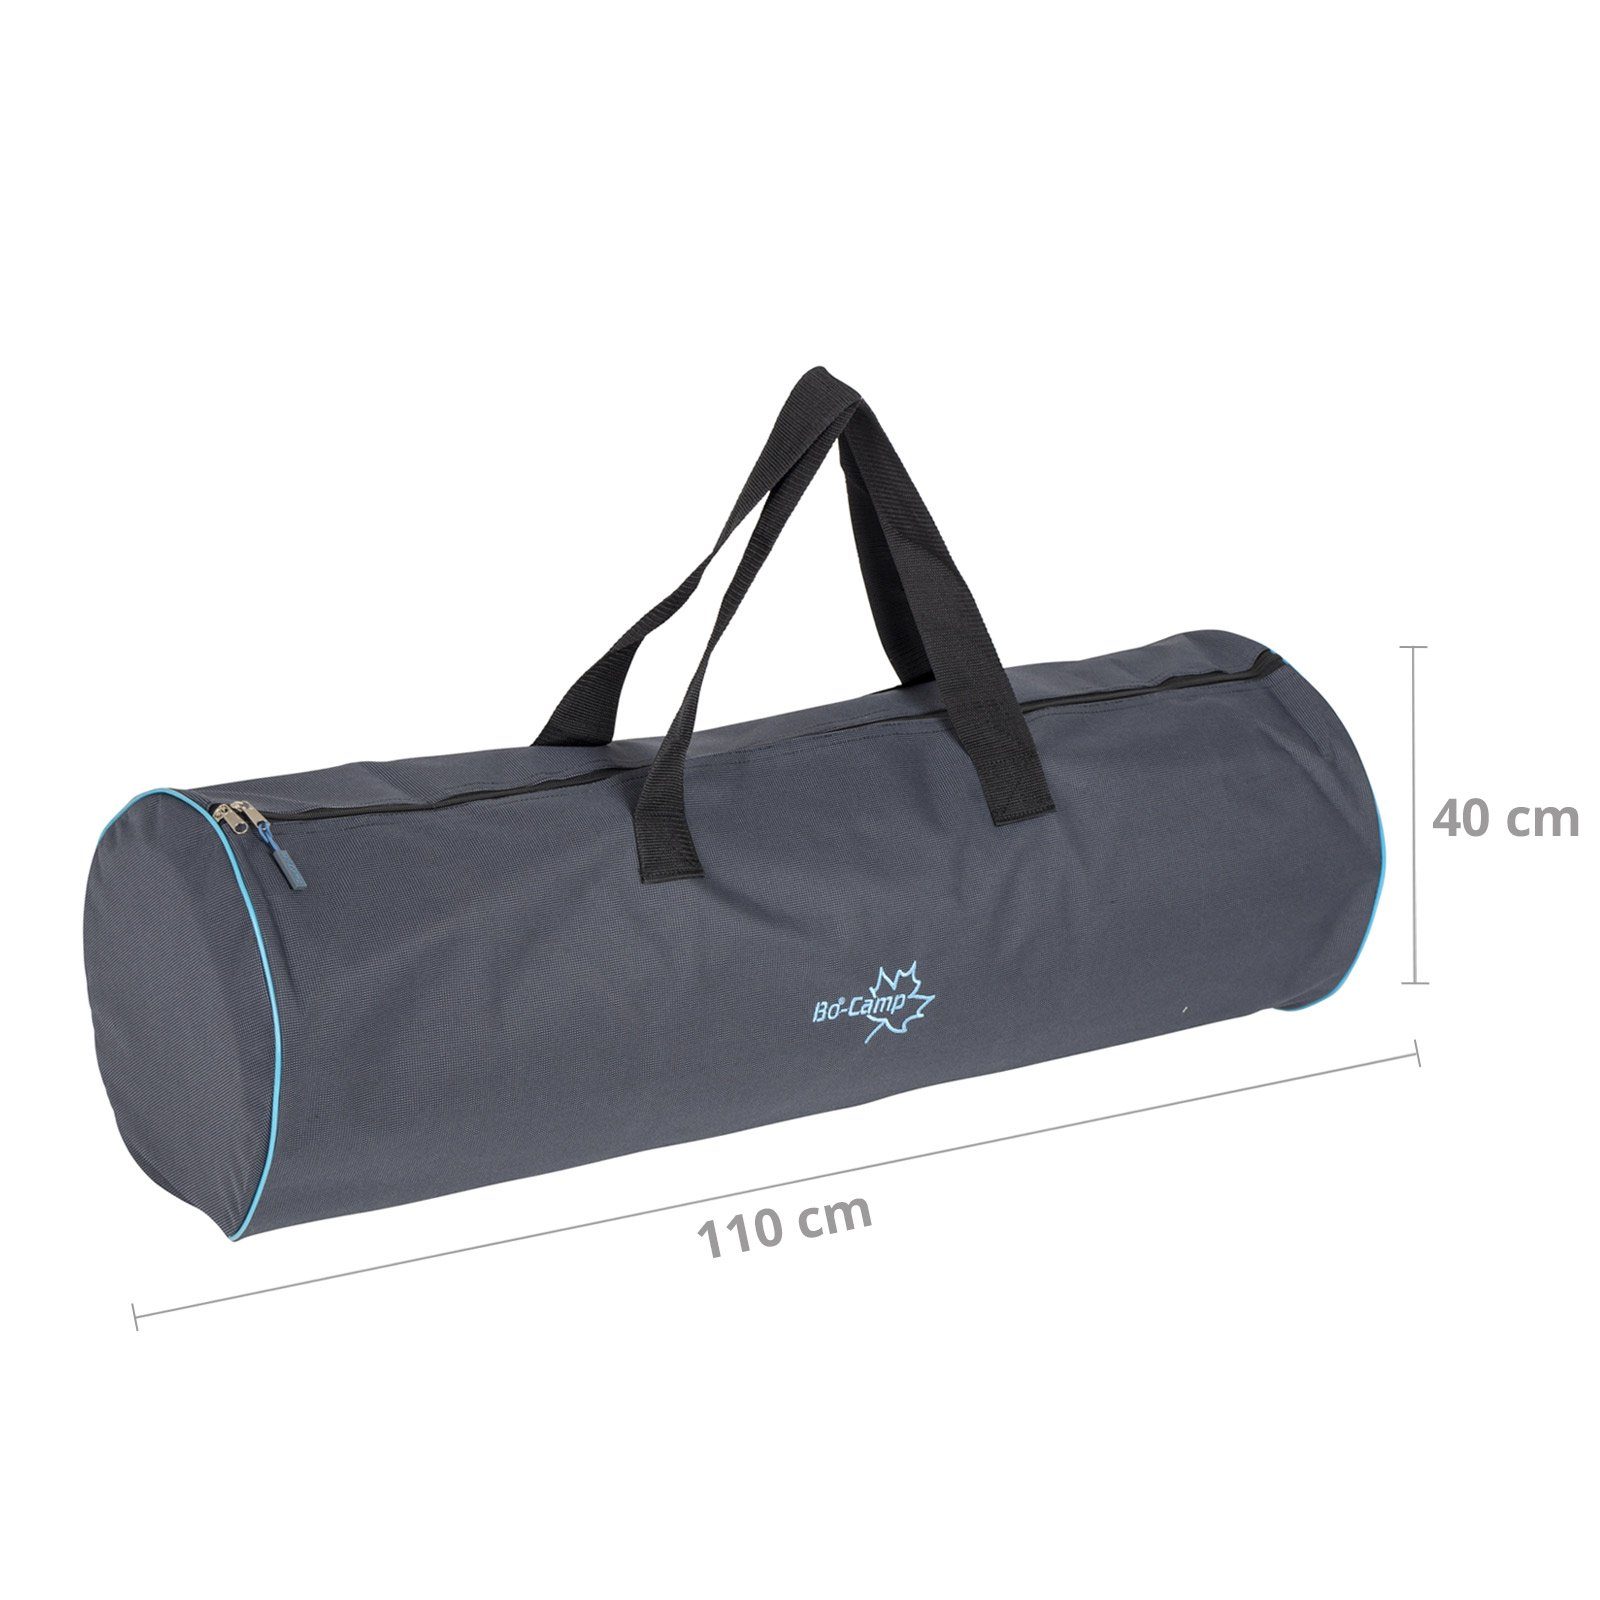 Camping Bo-Camp Zelt Universal Schutz Aufbewahrungstasche Tasche Transport Pack, Packsack